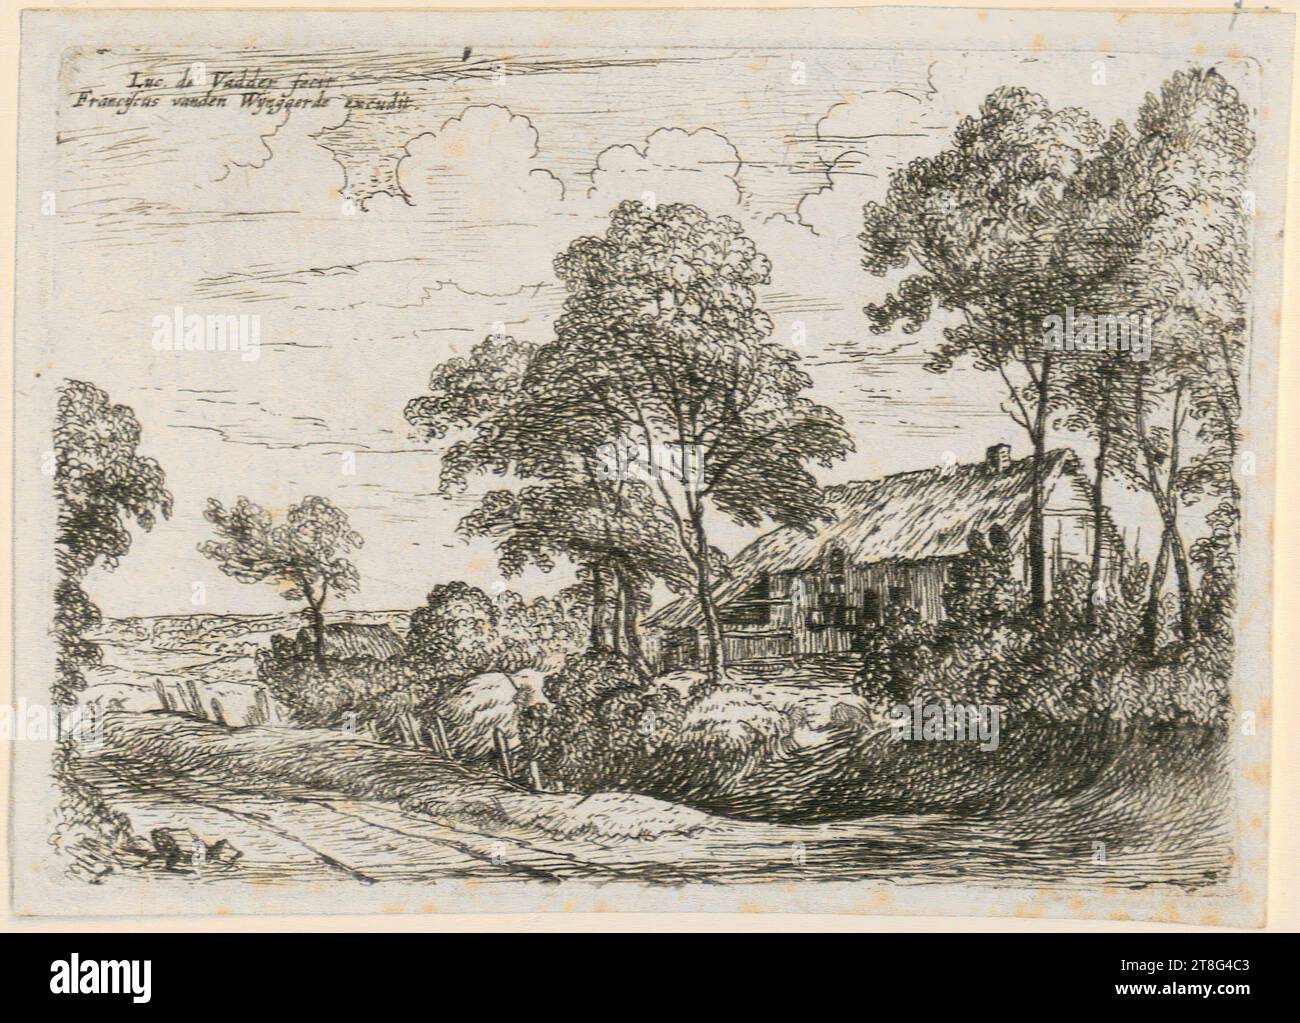 Lodewyk de Vadder (1605 - 1655)Frans van den Wyngaerde (1614 - 1679), éditeur, maison de chaume, feuille 8 de la série 'petits paysages', support d'impression : circa 1620 - 1655, gravure, taille de feuille : 7,7 x 10,6 cm, signée et inscrite en haut à gauche 'Luc. De Vadder fecit., Franciscus vanden Wijngaerde excuditt', verso en bas à gauche bleu Banque D'Images